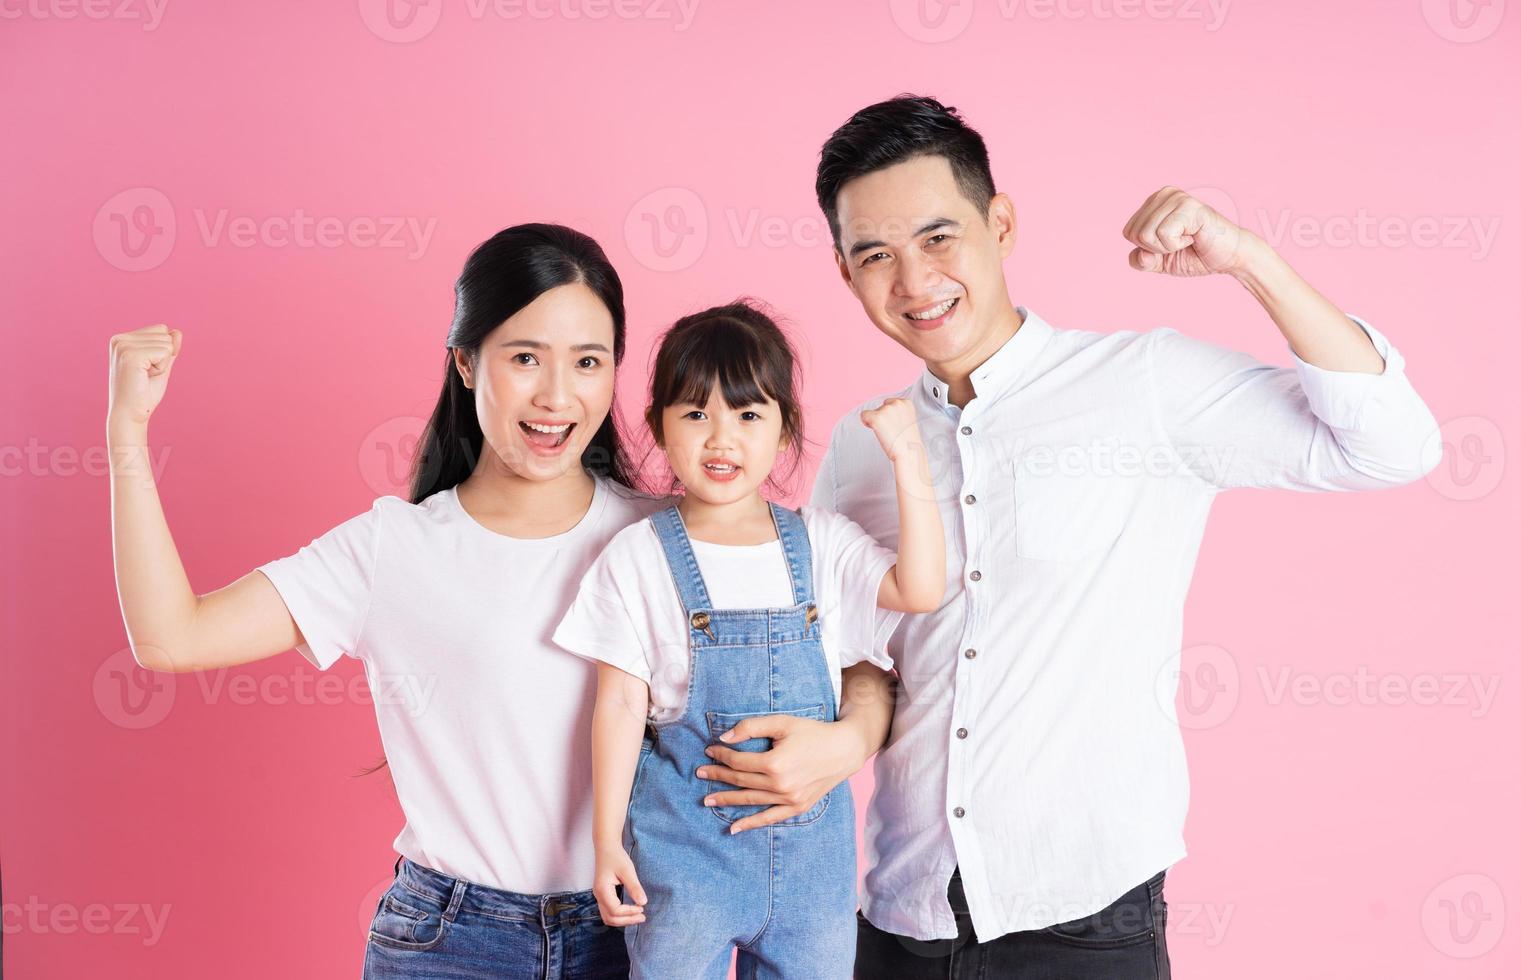 imagen de familia asiática joven aislada sobre fondo rosa foto